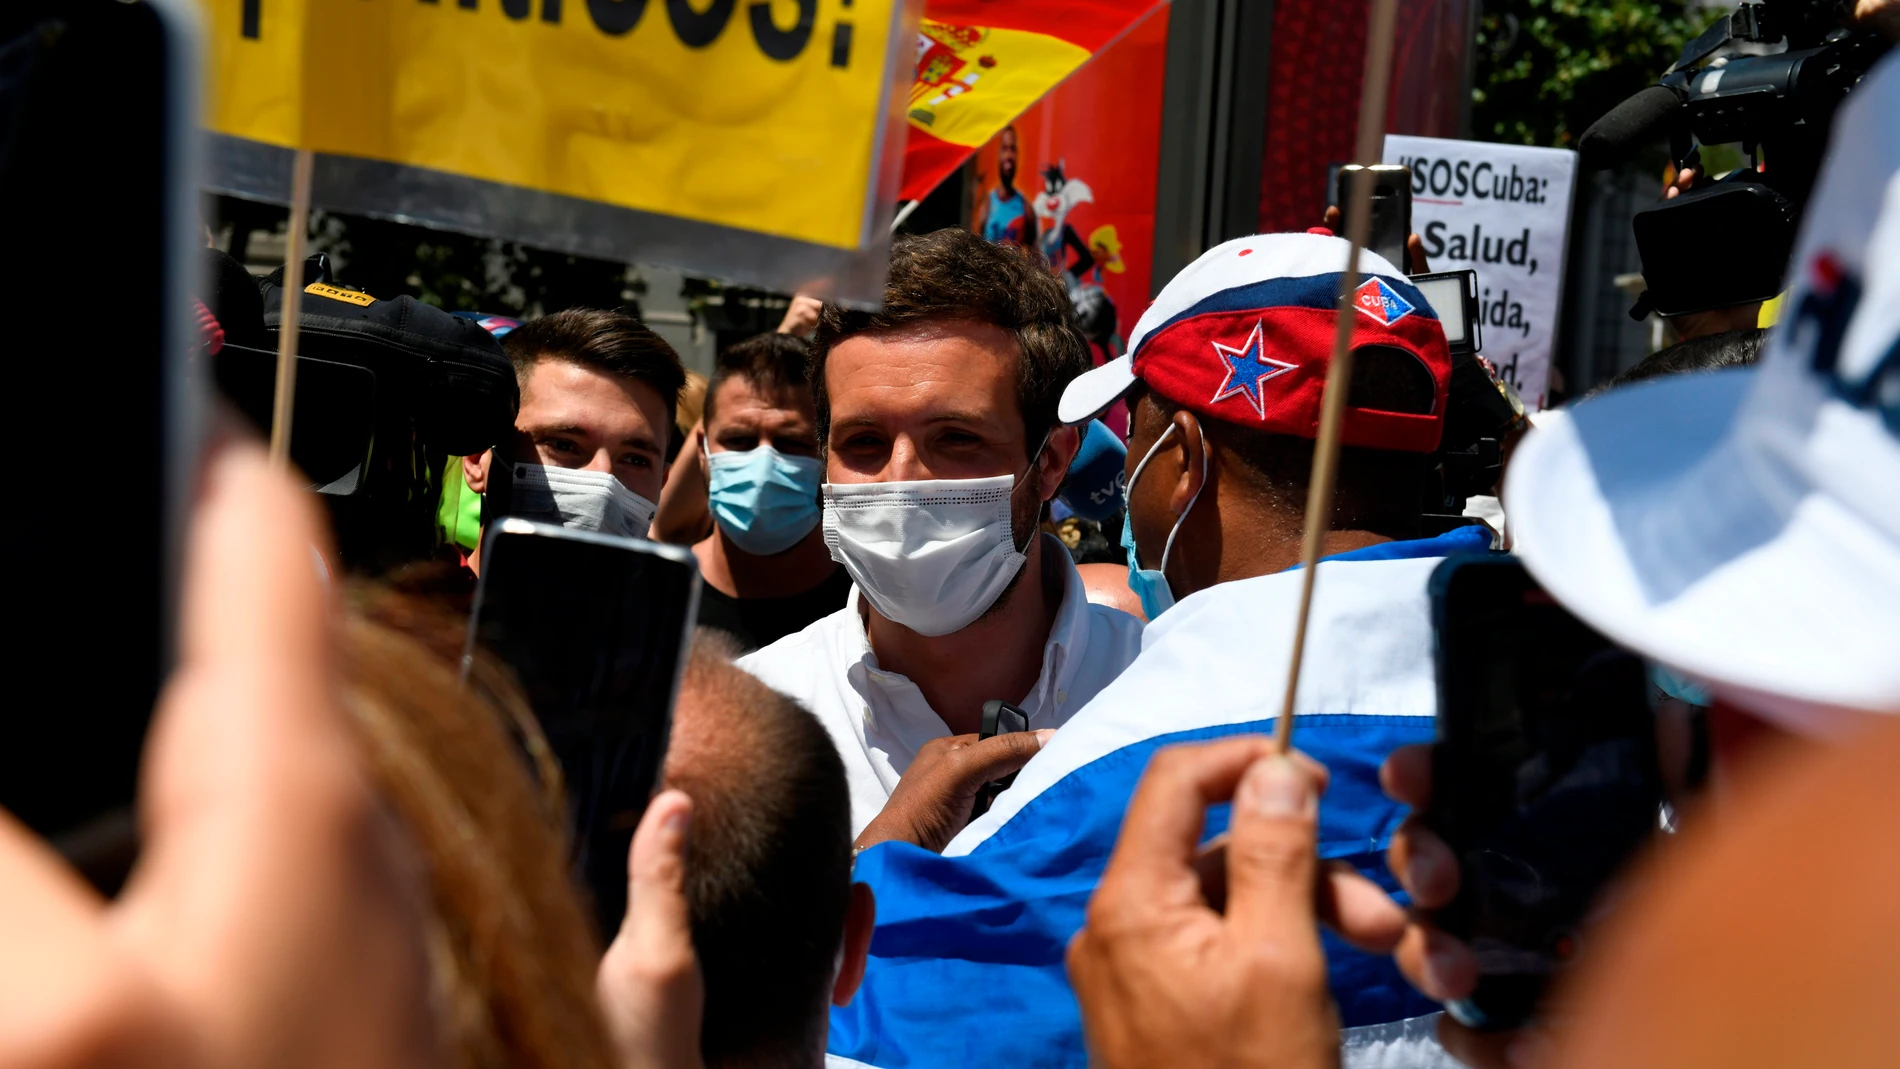 El presidente del PP, Pablo Casado, participa en la marcha en defensa de los derechos humanos en Cuba